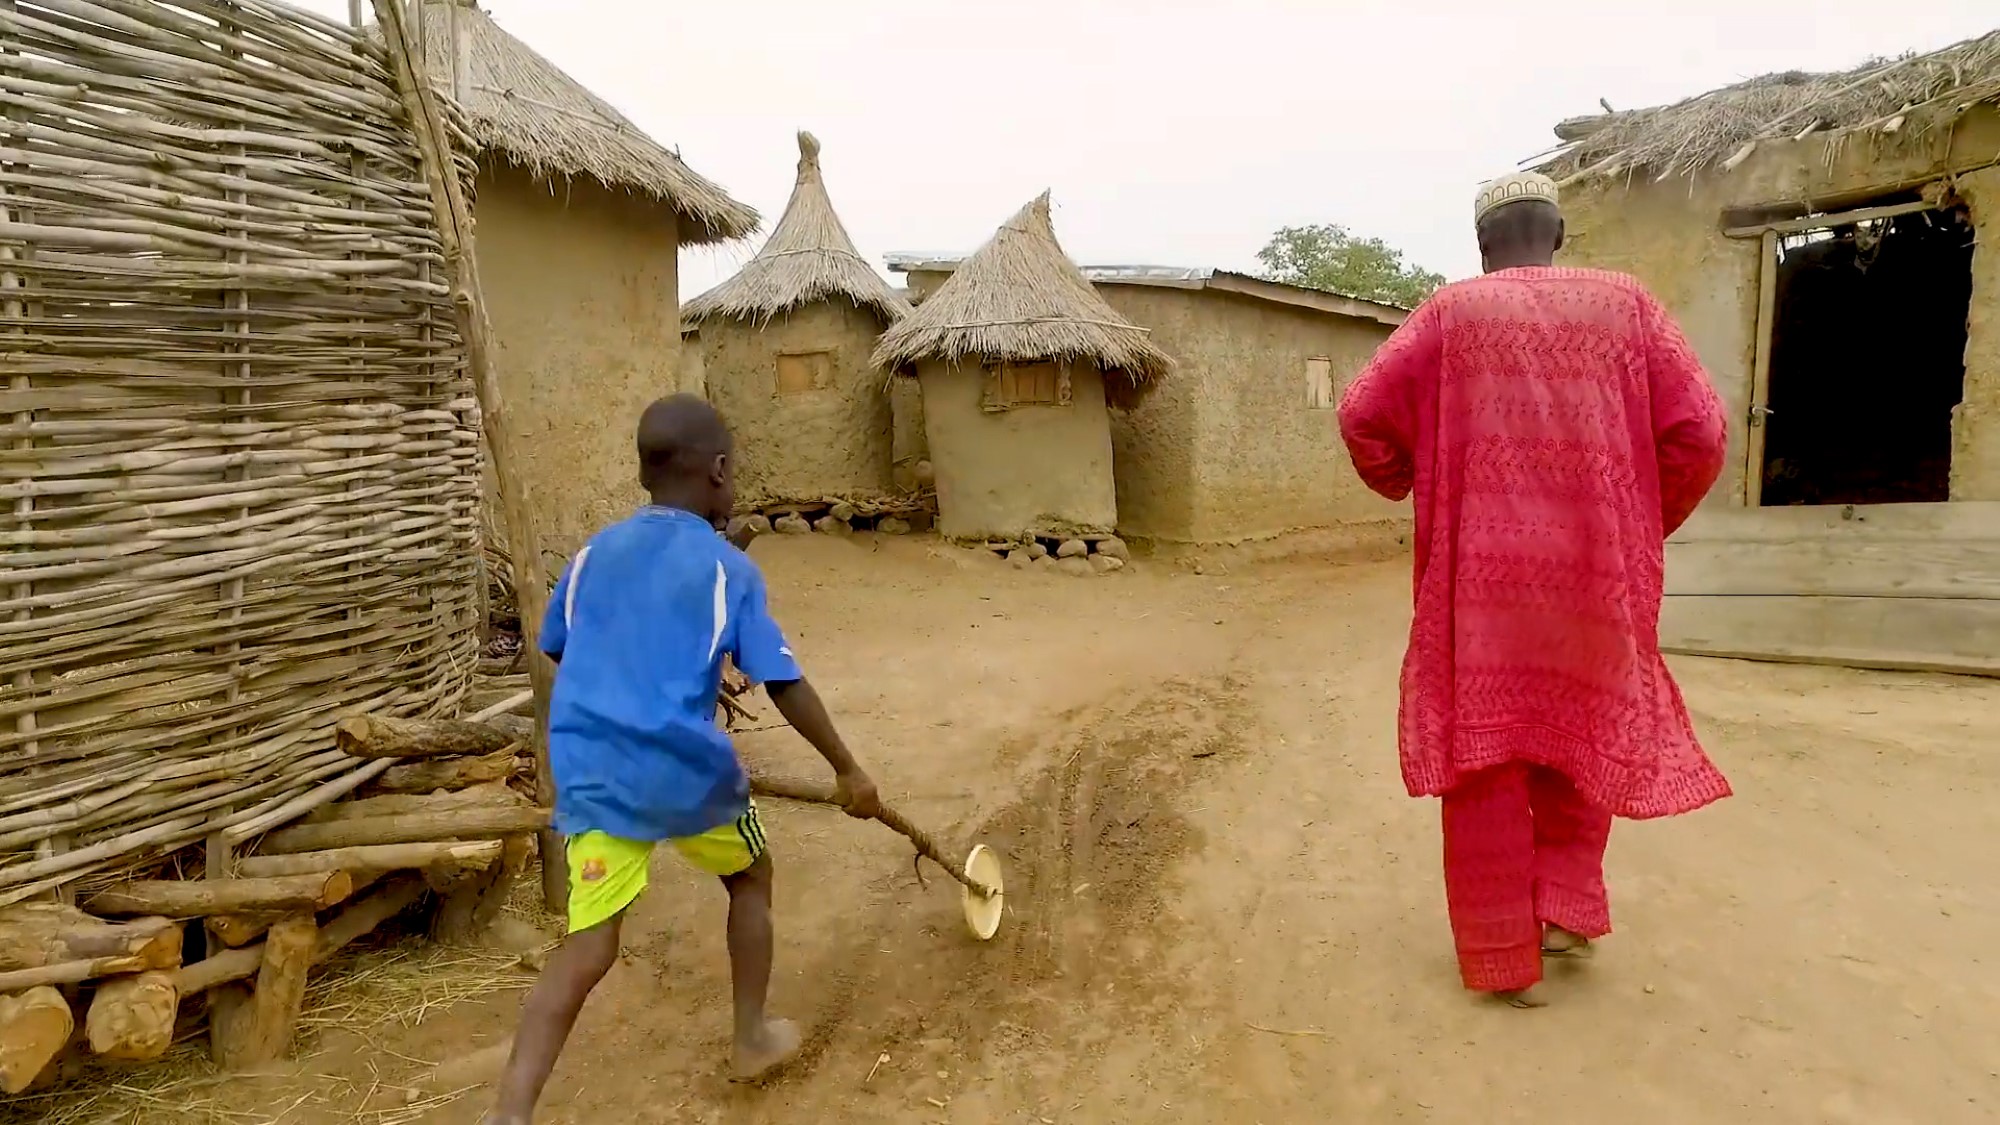 Eldre mann og gutt går mellom jordhytter i landsby